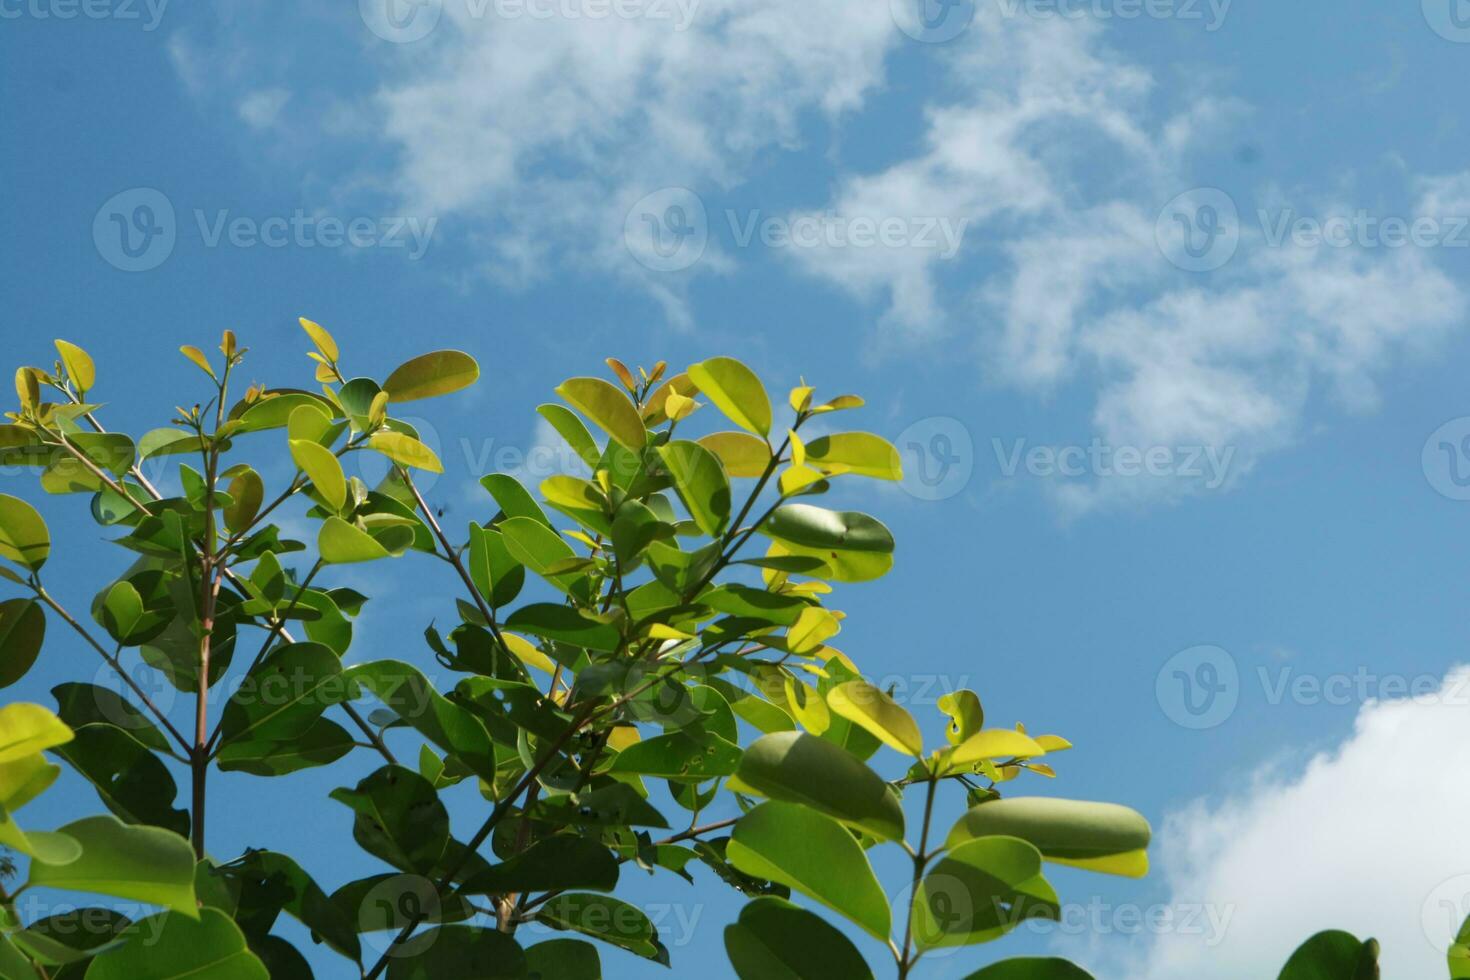 foto di verde le foglie con chiaro blu cielo come sfondo